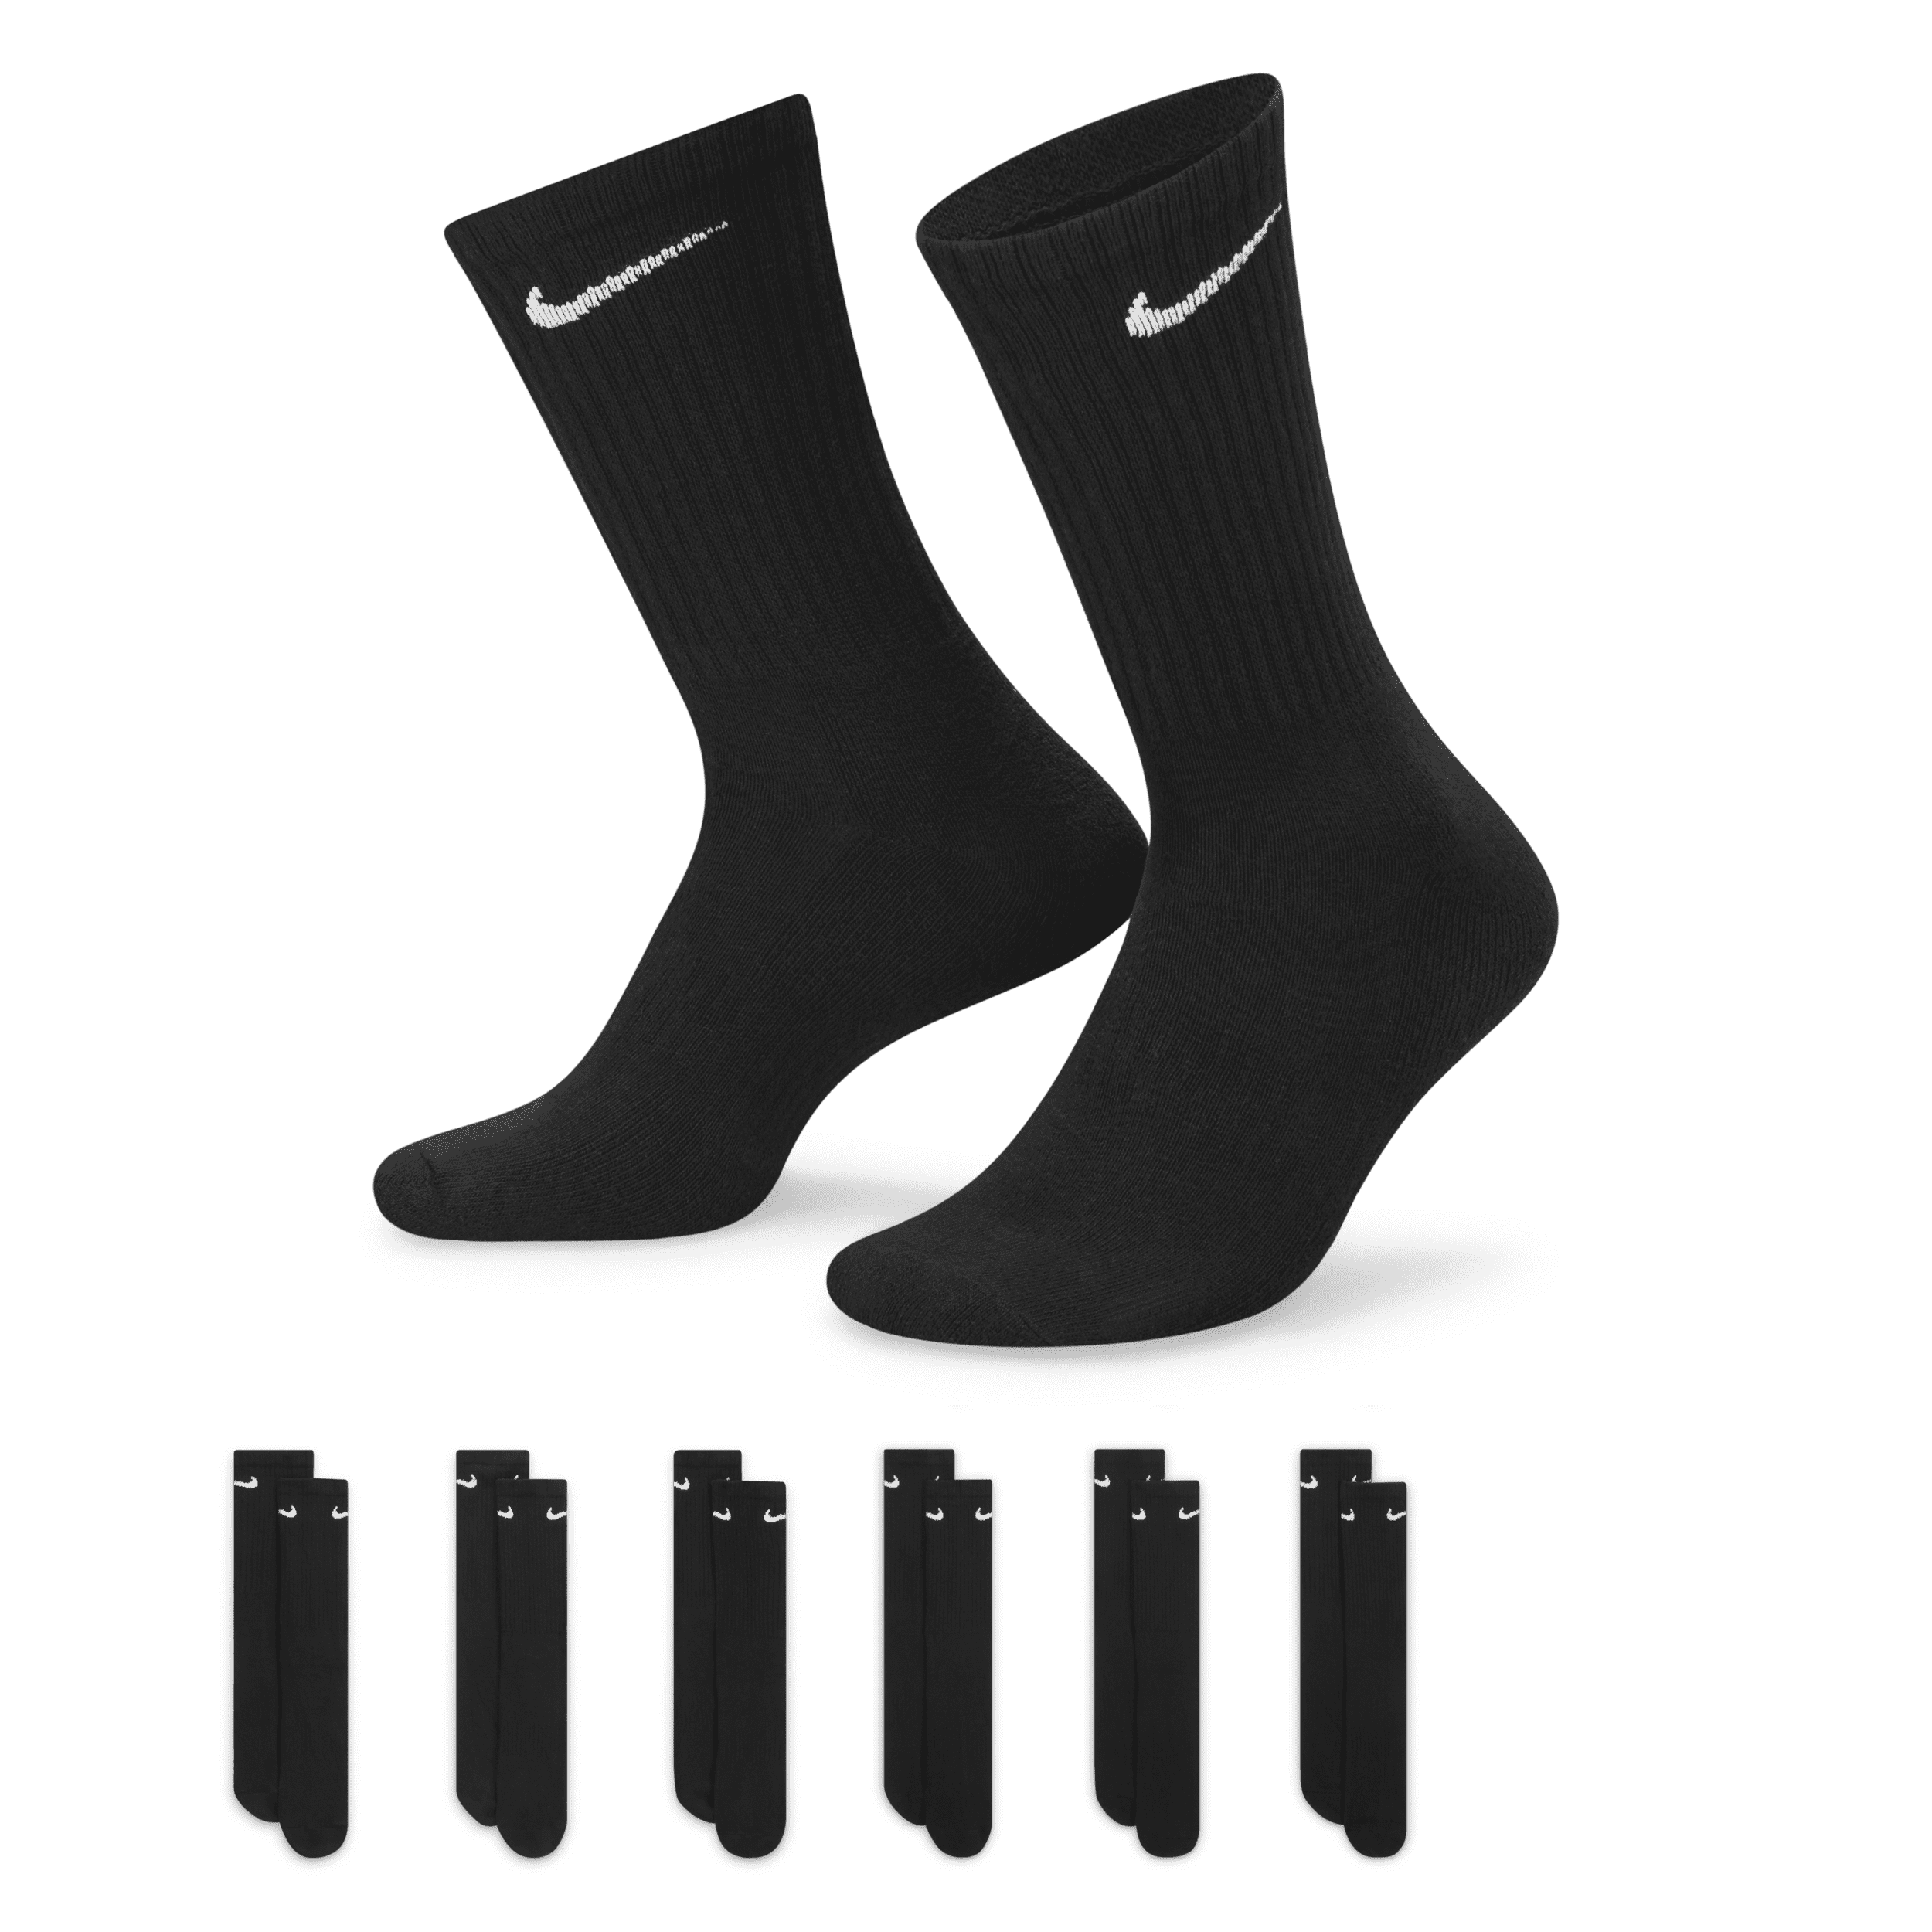 Calze da training Nike Everyday Cushioned di media lunghezza (6 paia) - Nero